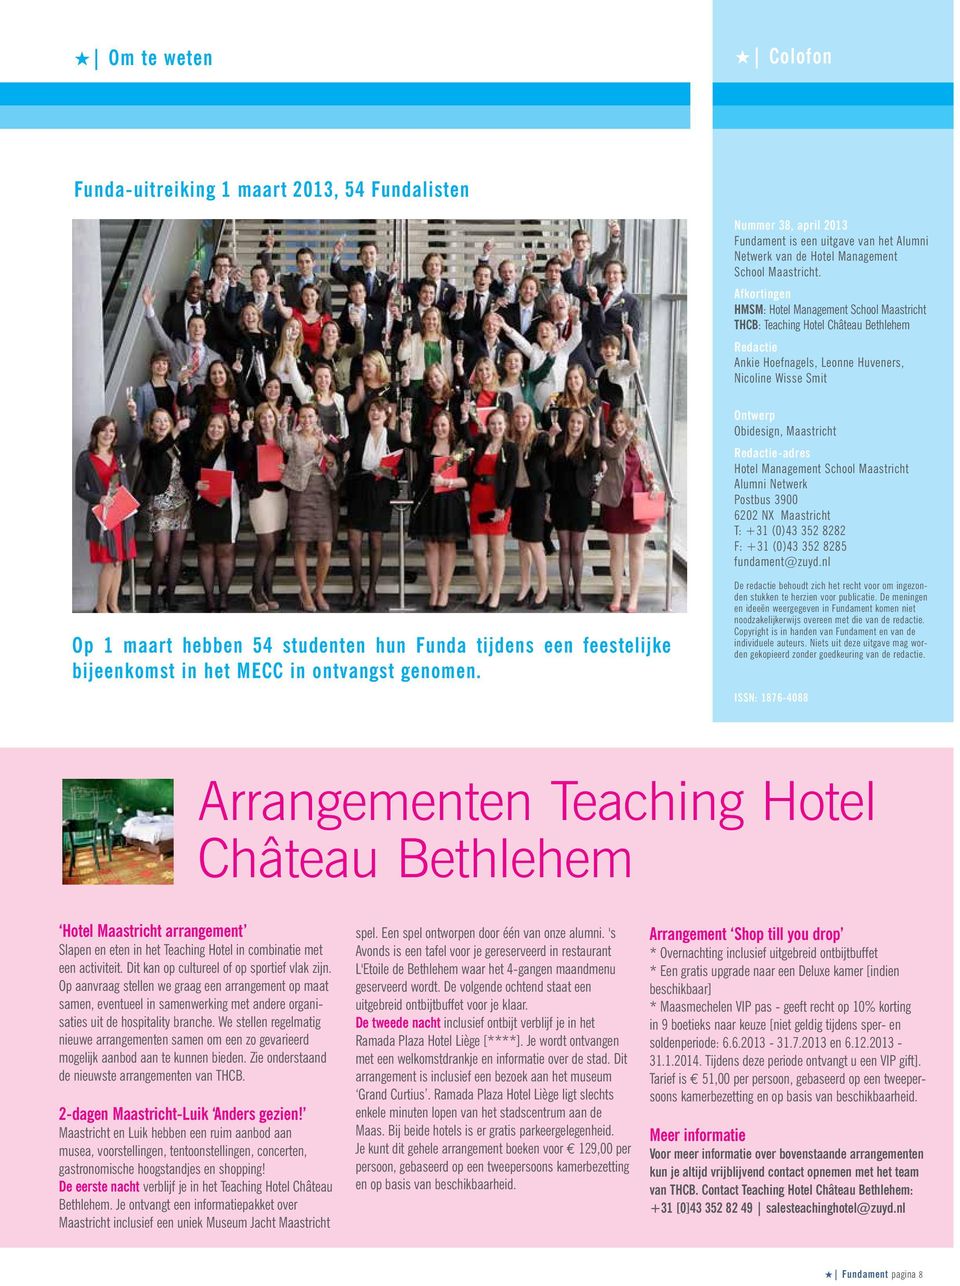 Redactie-adres Hotel Management School Maastricht Alumni Netwerk Postbus 3900 6202 NX Maastricht T: +31 (0)43 352 8282 F: +31 (0)43 352 8285 fundament@zuyd.